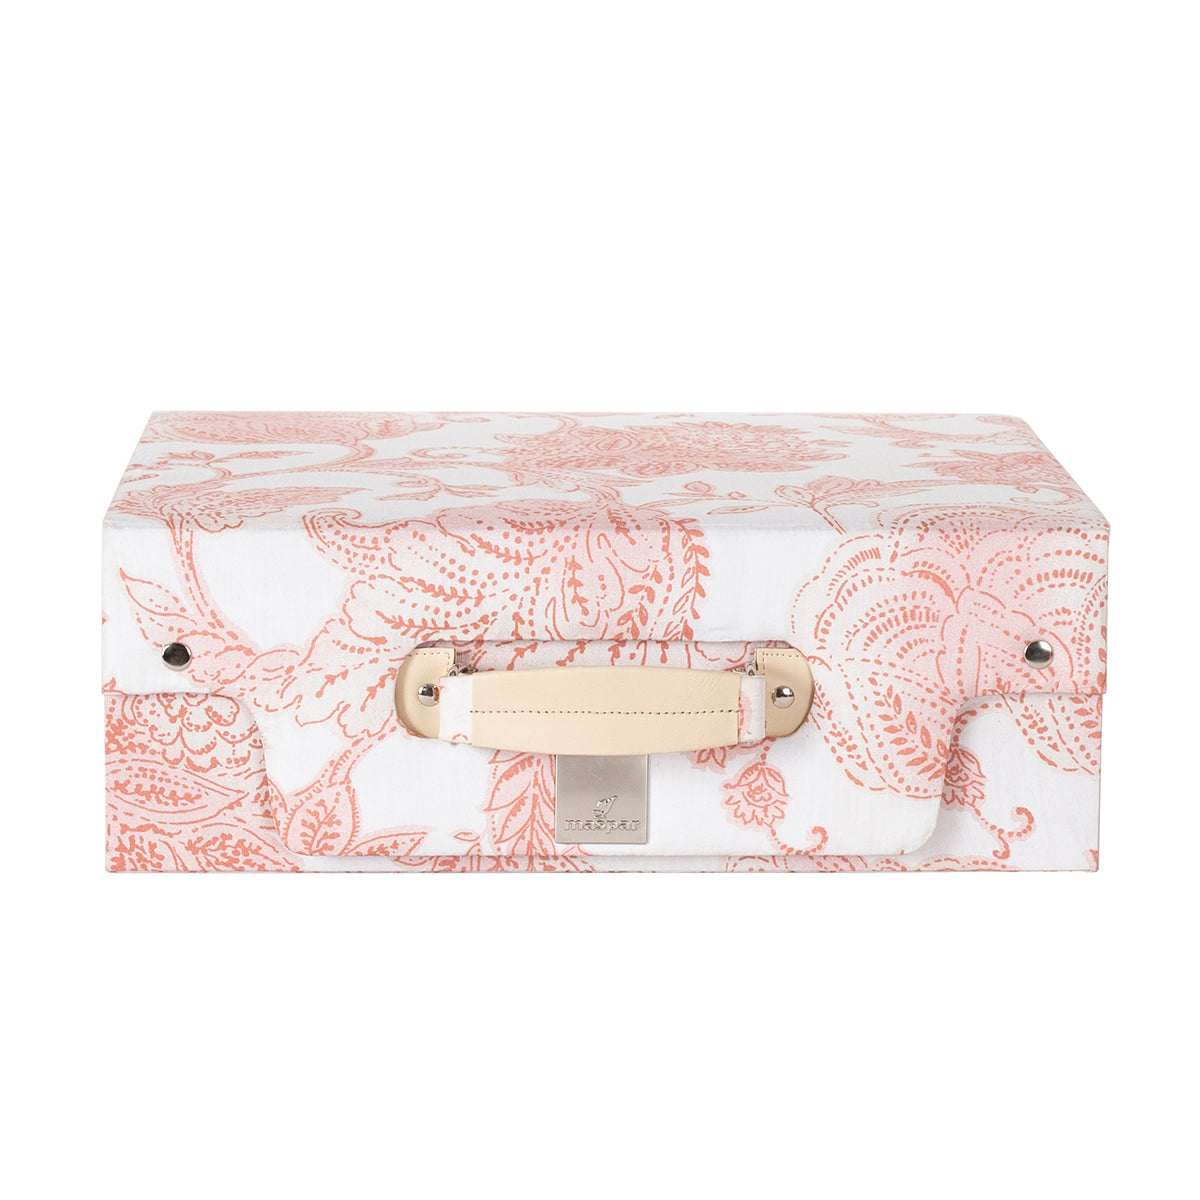 Art Nouveau Mabel 100% Cotton Soft Red 8PC Duvet Cover Set